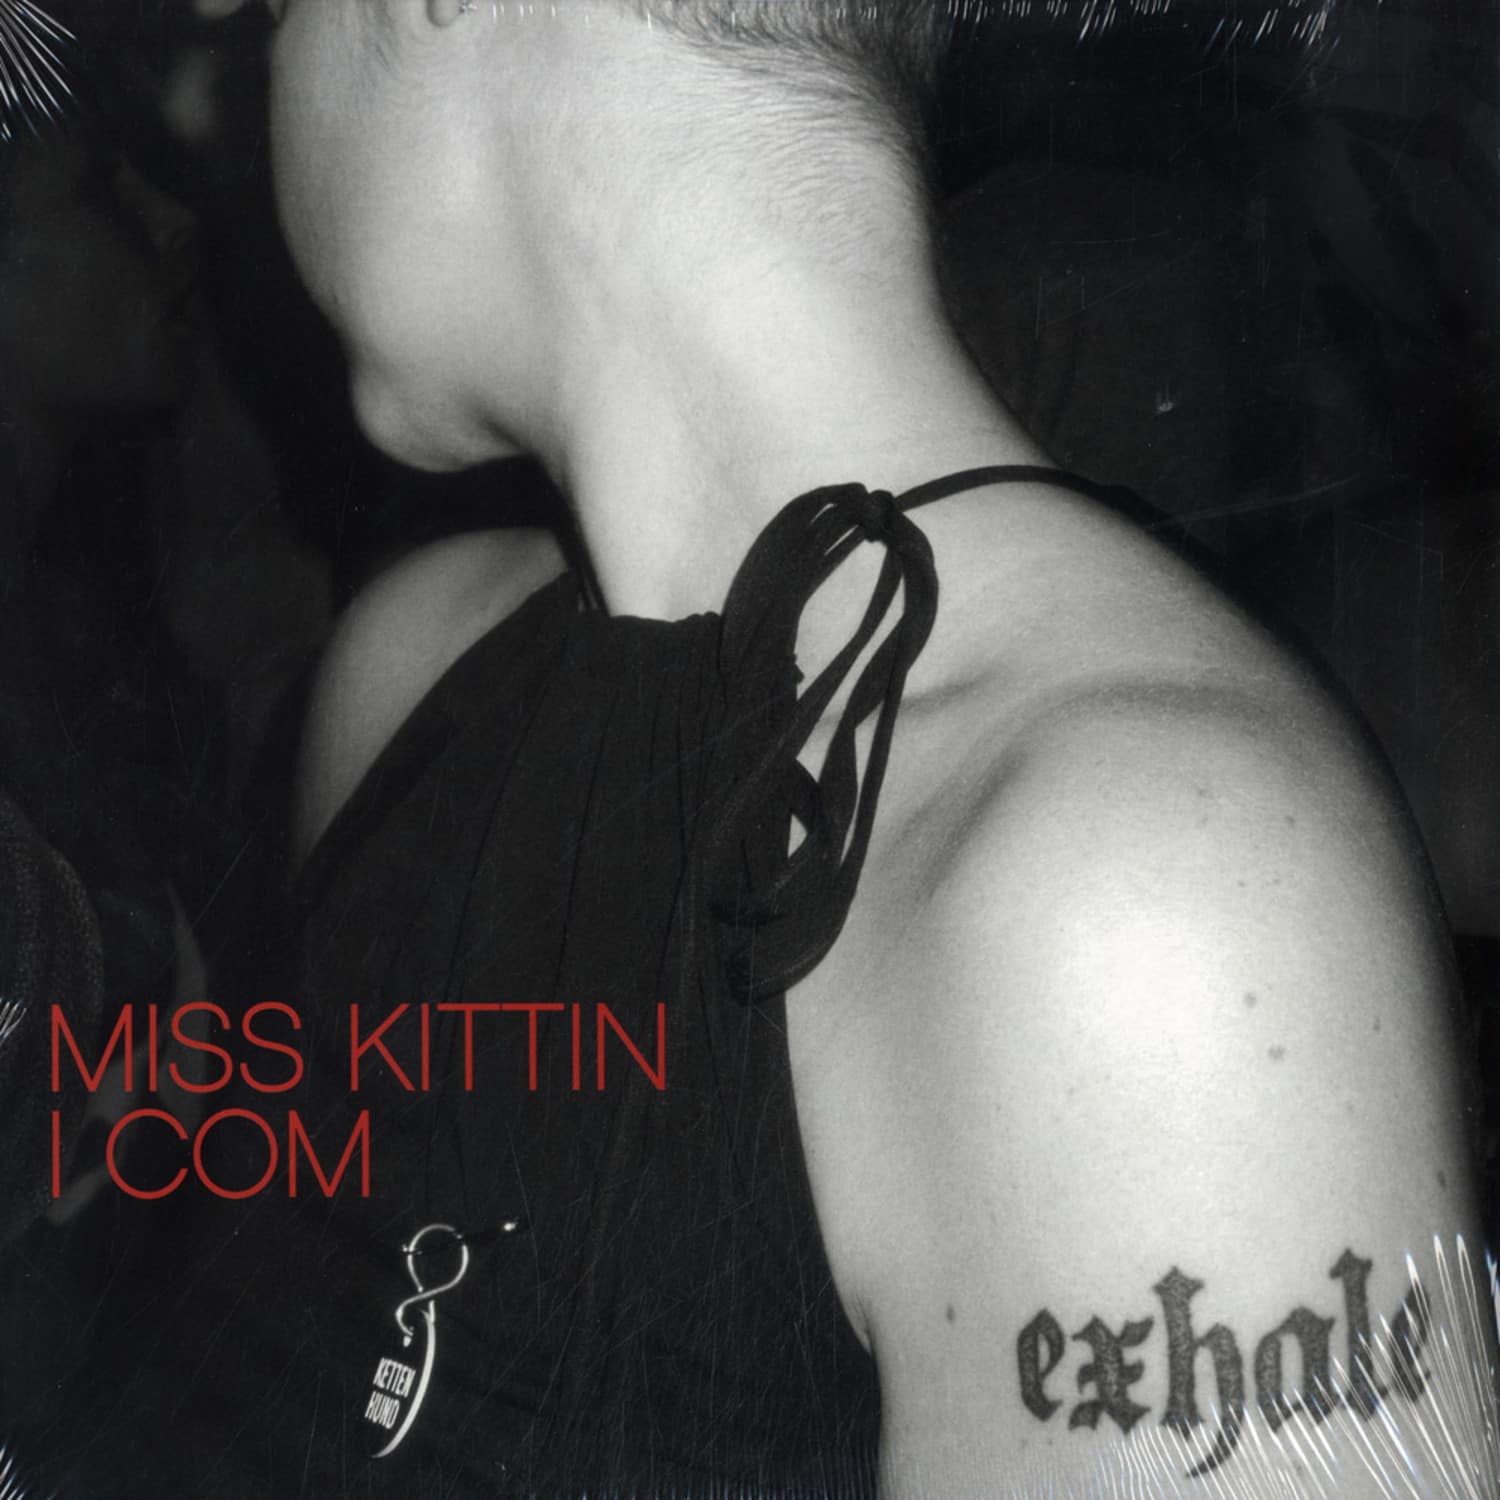 Miss Kittin - I COM 2xLP